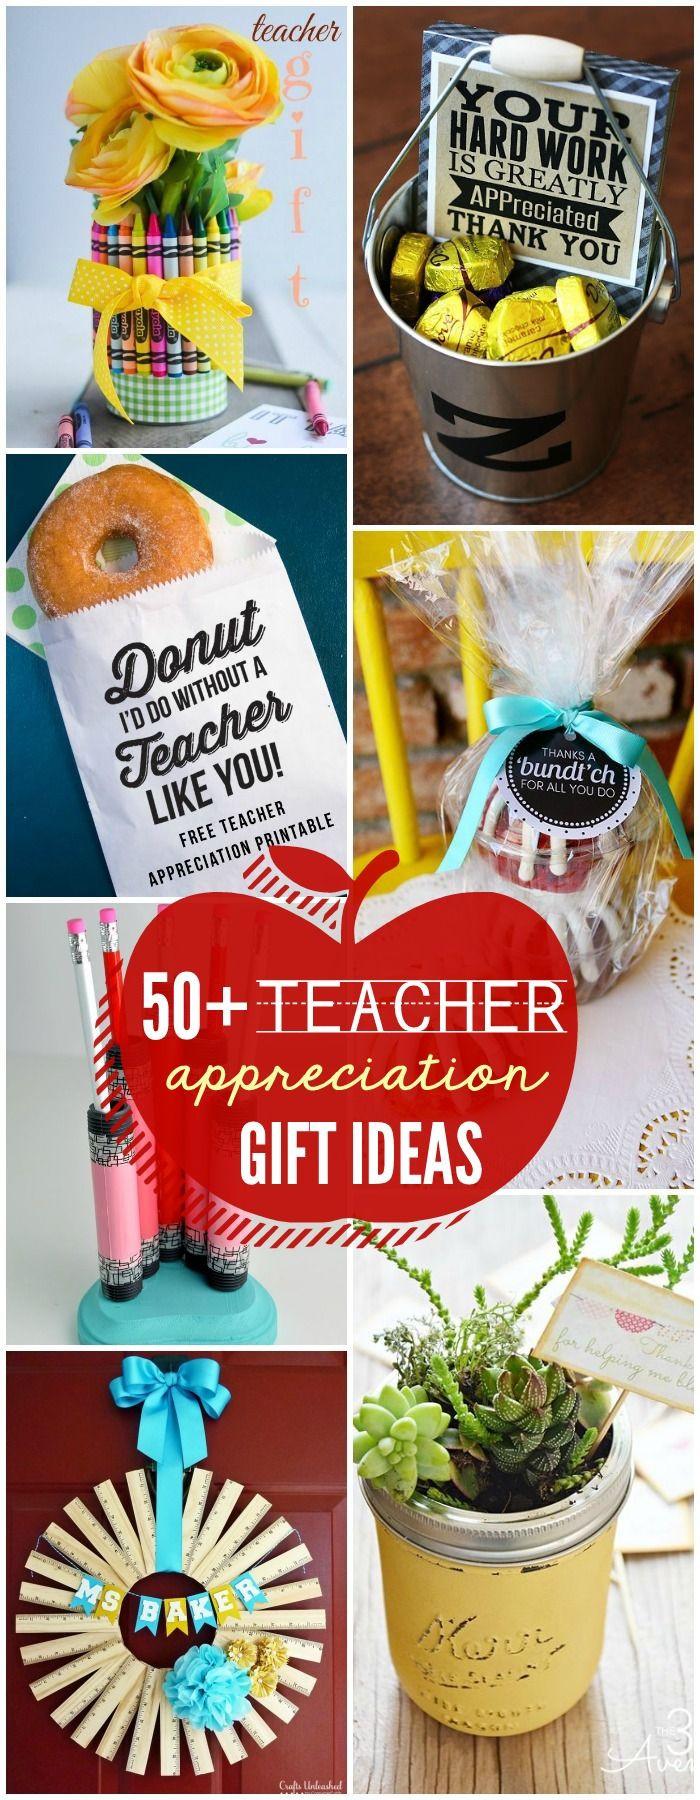 Best ideas about Preschool Teachers Gift Ideas
. Save or Pin 25 best Preschool teacher ts ideas on Pinterest Now.